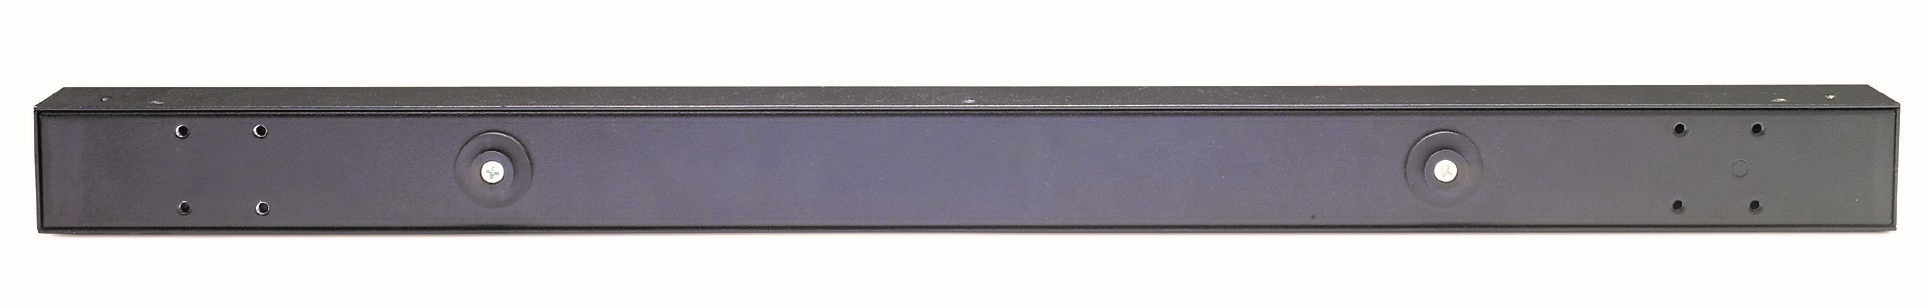 APC Basic Rack PDU AP9572 grenuttag 15 AC-utgångar 0U Svart